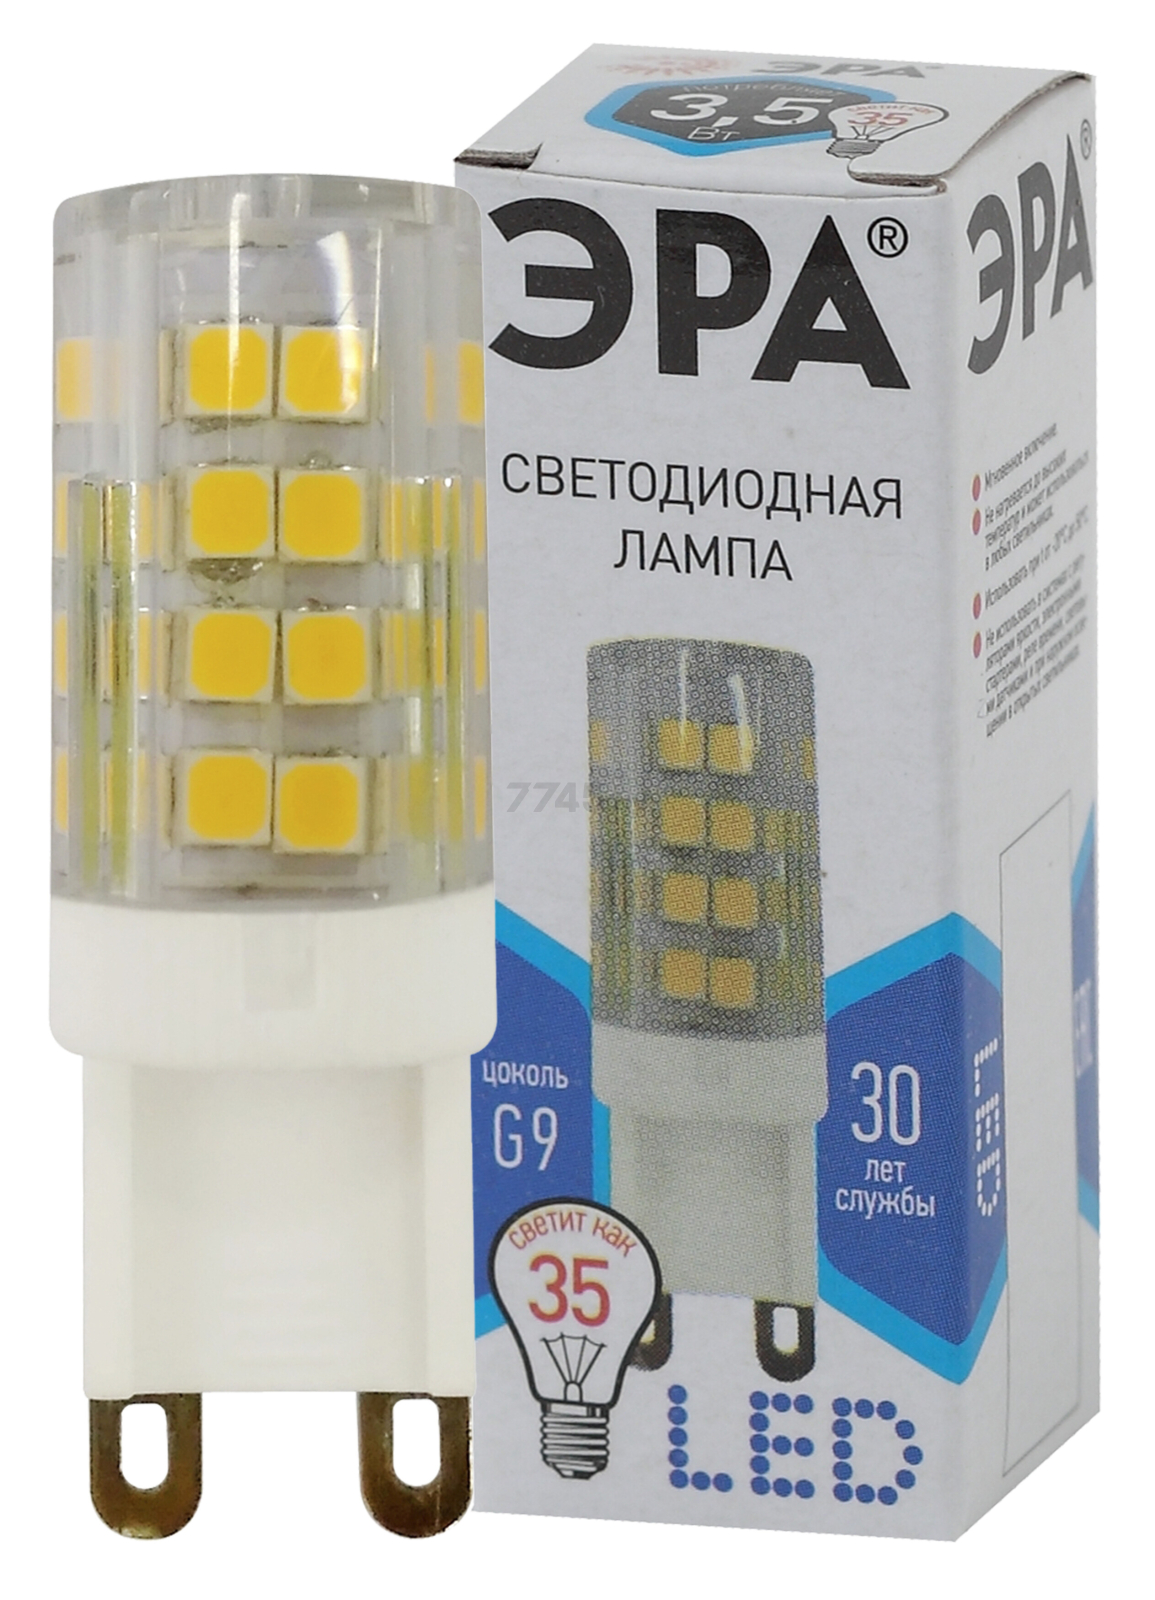 Лампа светодиодная G9 ЭРА ceramic-840 STD JCD 3,5 Вт - Фото 2